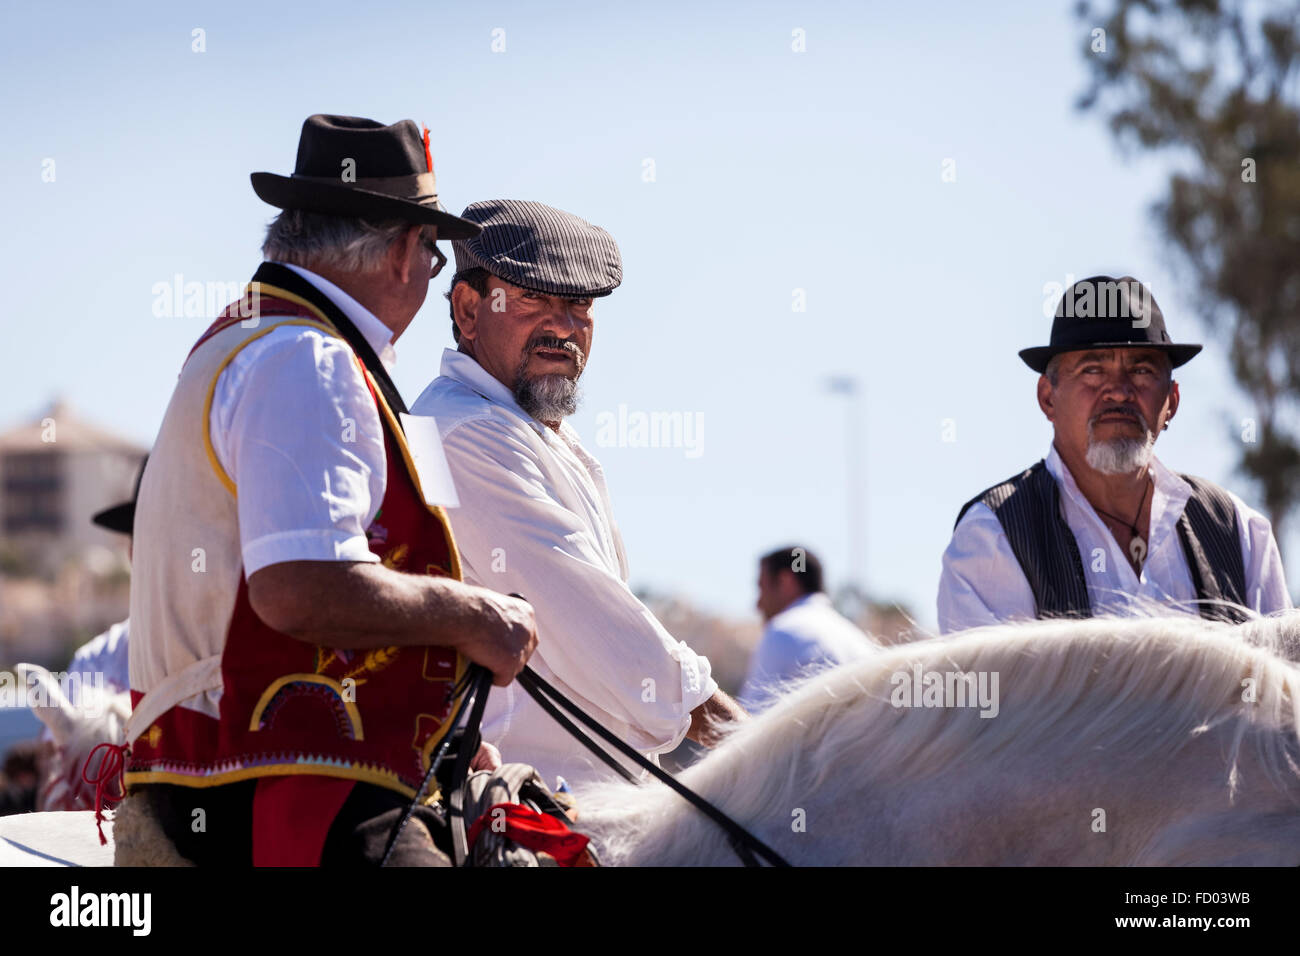 Reiter und Pferde in der Koppel bei der Fiesta San Sebastian La Caleta, Costa Adeje, Teneriffa, Kanarische Inseln, Spanien. Stockfoto